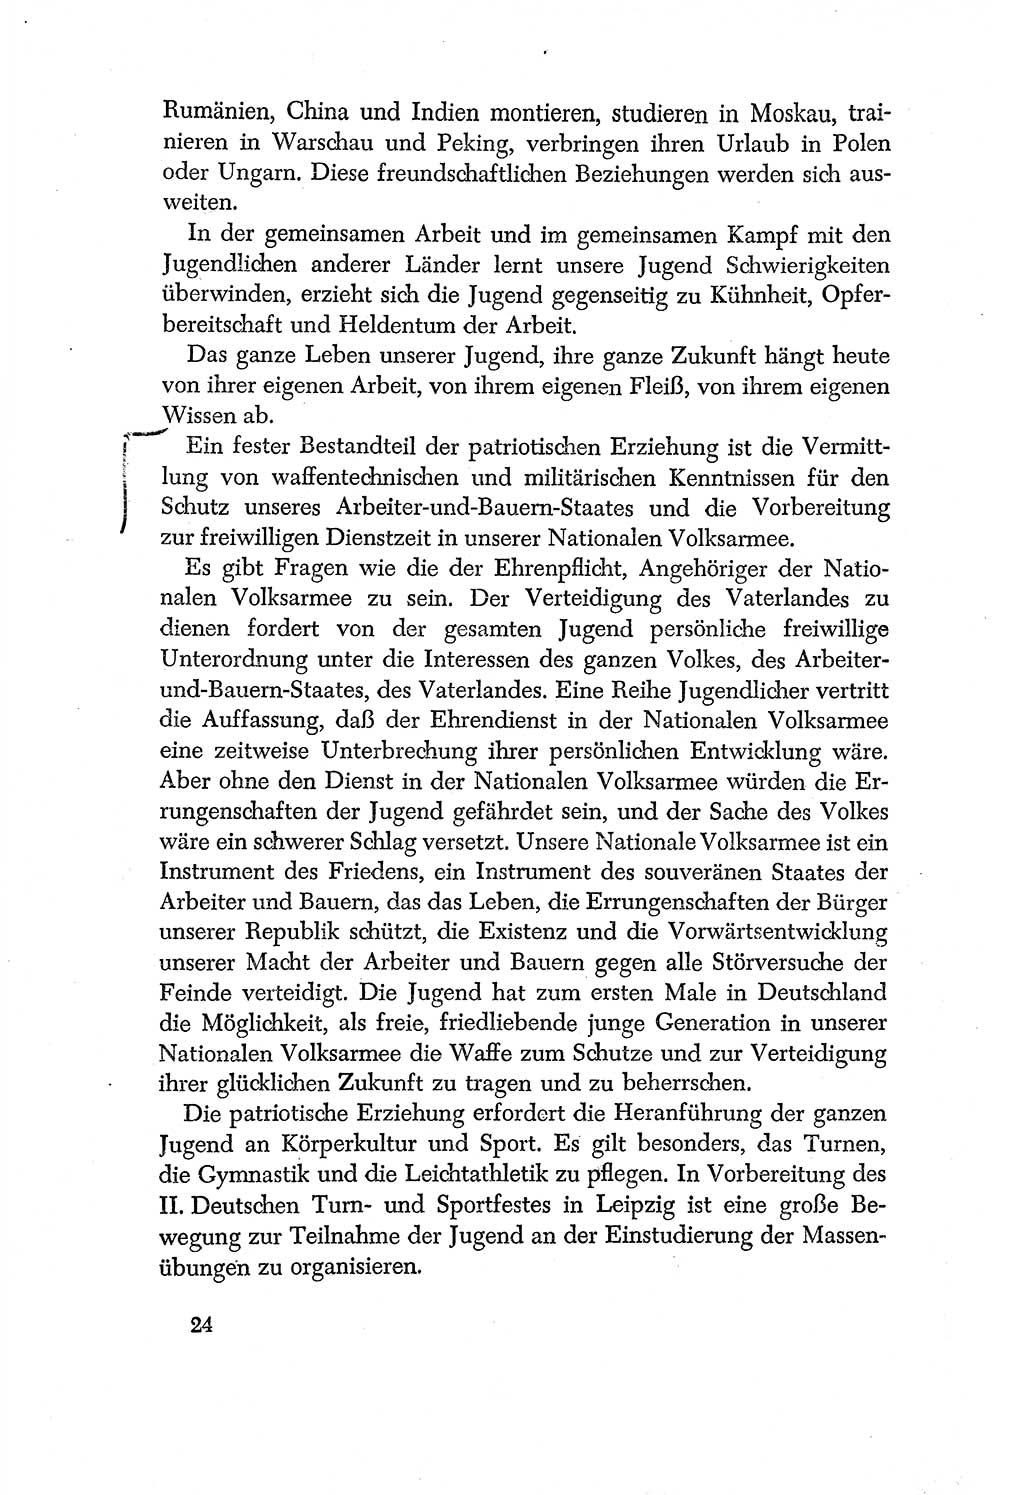 Dokumente der Sozialistischen Einheitspartei Deutschlands (SED) [Deutsche Demokratische Republik (DDR)] 1956-1957, Seite 24 (Dok. SED DDR 1956-1957, S. 24)